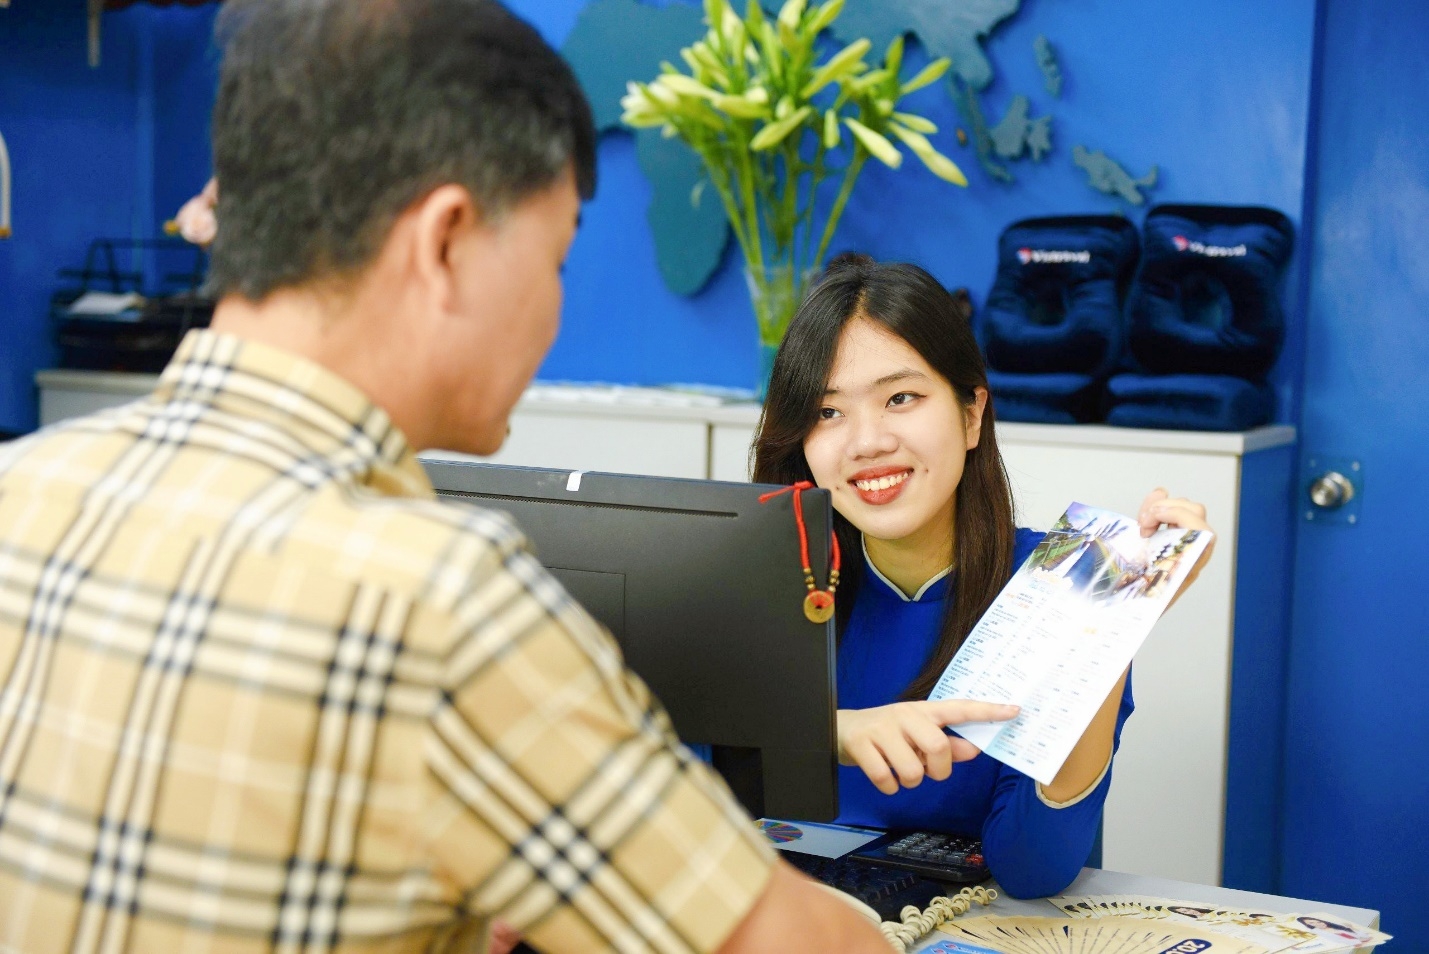 Vietravel Hà Nội khai trương văn phòng giao dịch tại 262 Xã Đàn